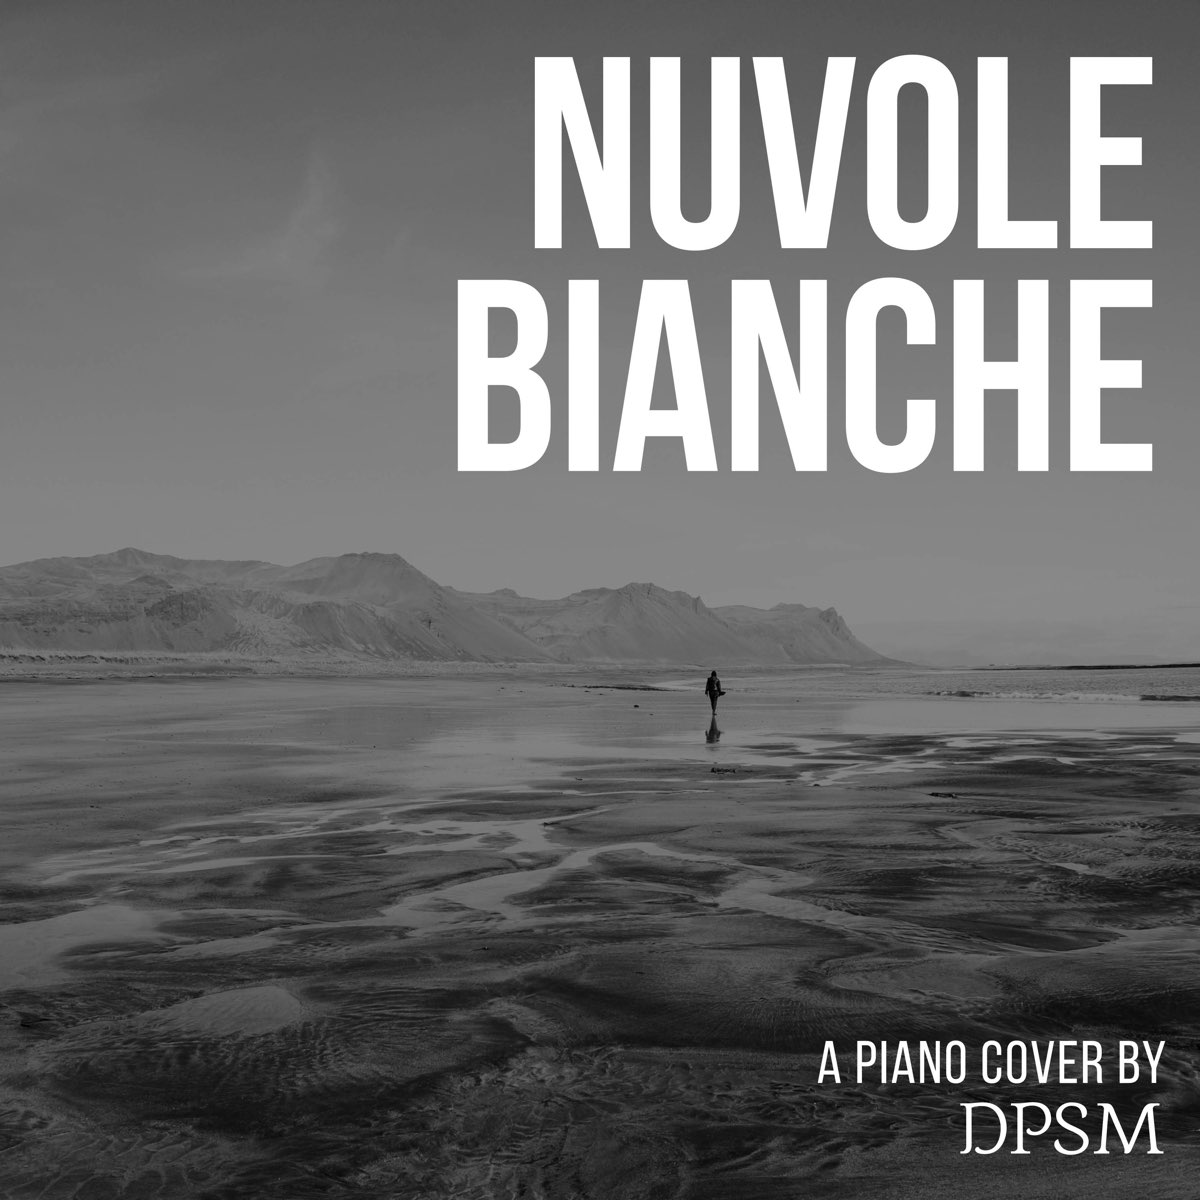 Einaudi: Nuvole Bianche - Single - Album by DPSM - Apple Music